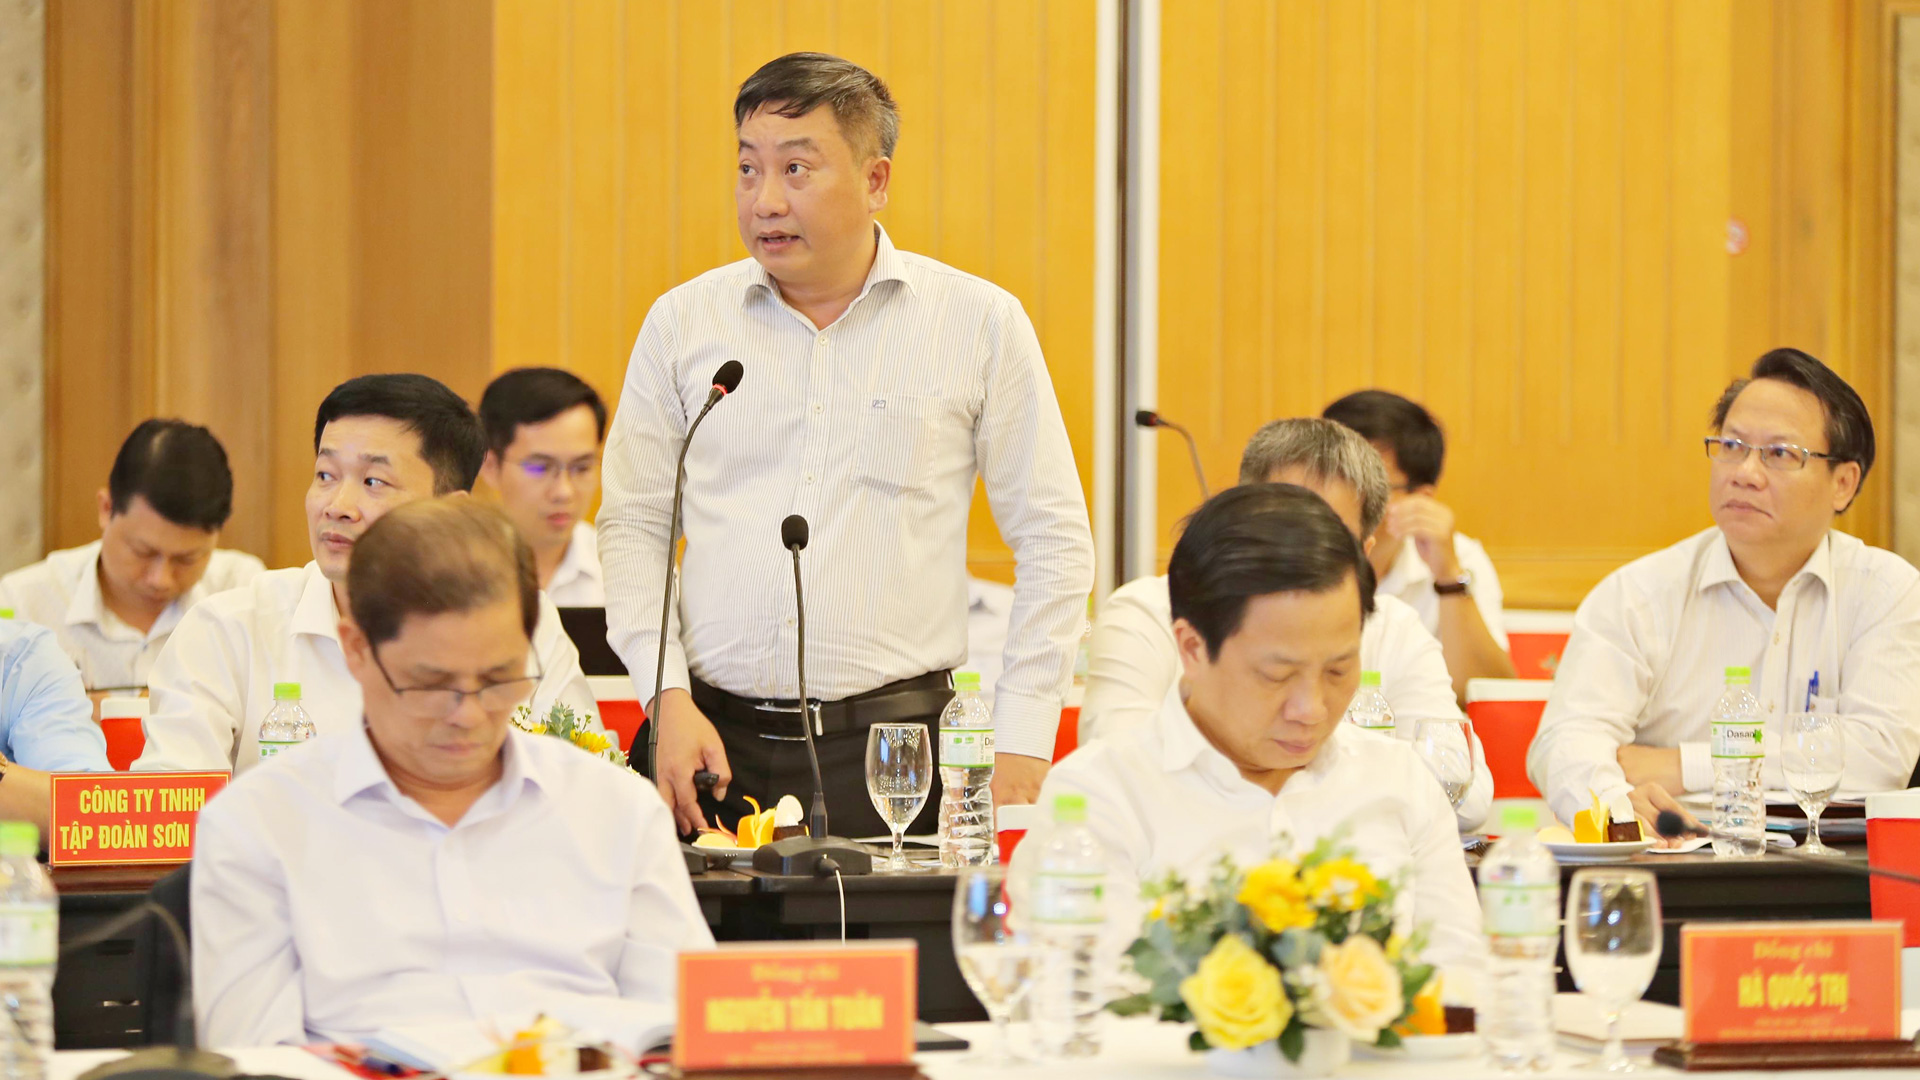 Đồng chí Nguyễn Văn Dần, Giám đốc Sở Giao thông vận tải Khánh Hoà phát biểu